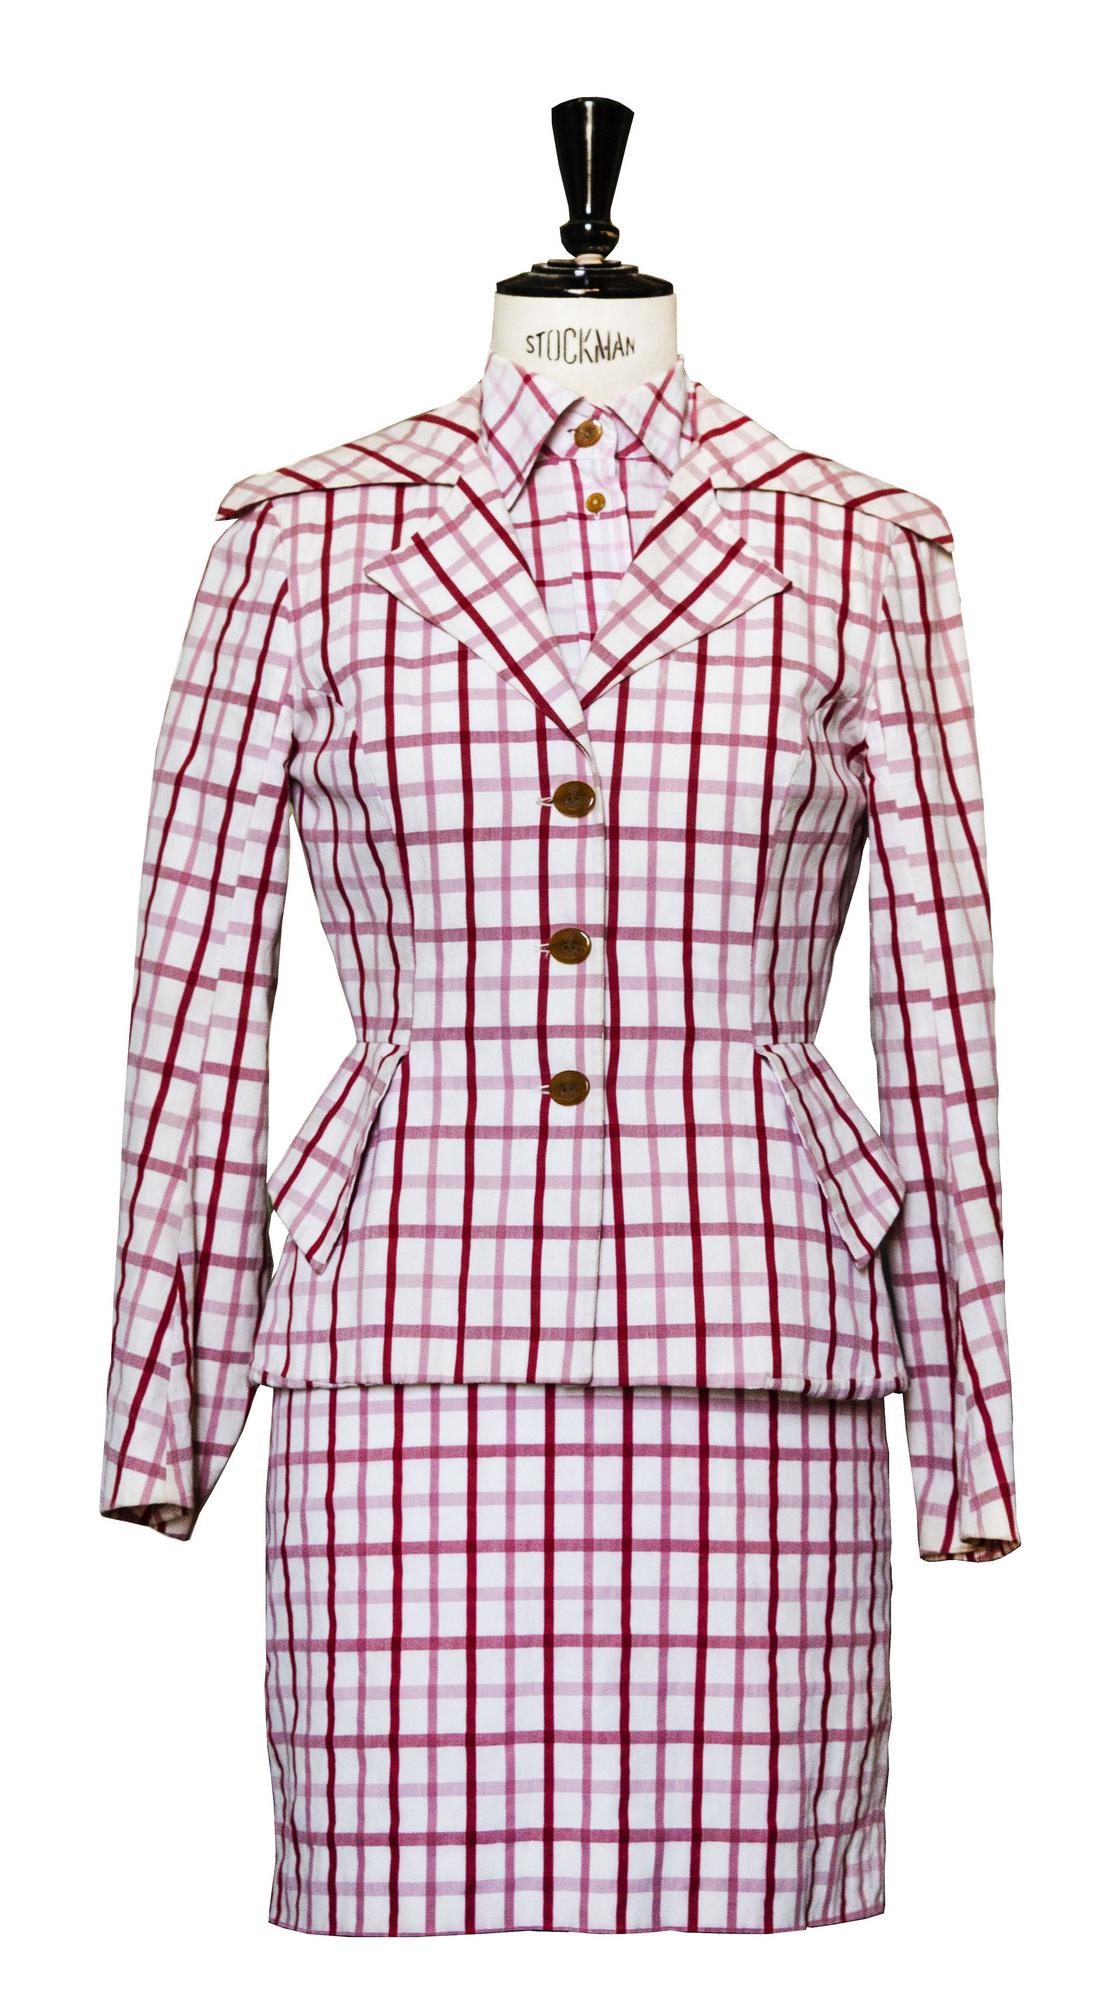 Vivienne Westwood SEERSUCKER SUIT Description: Three pieces outfit: a lined...